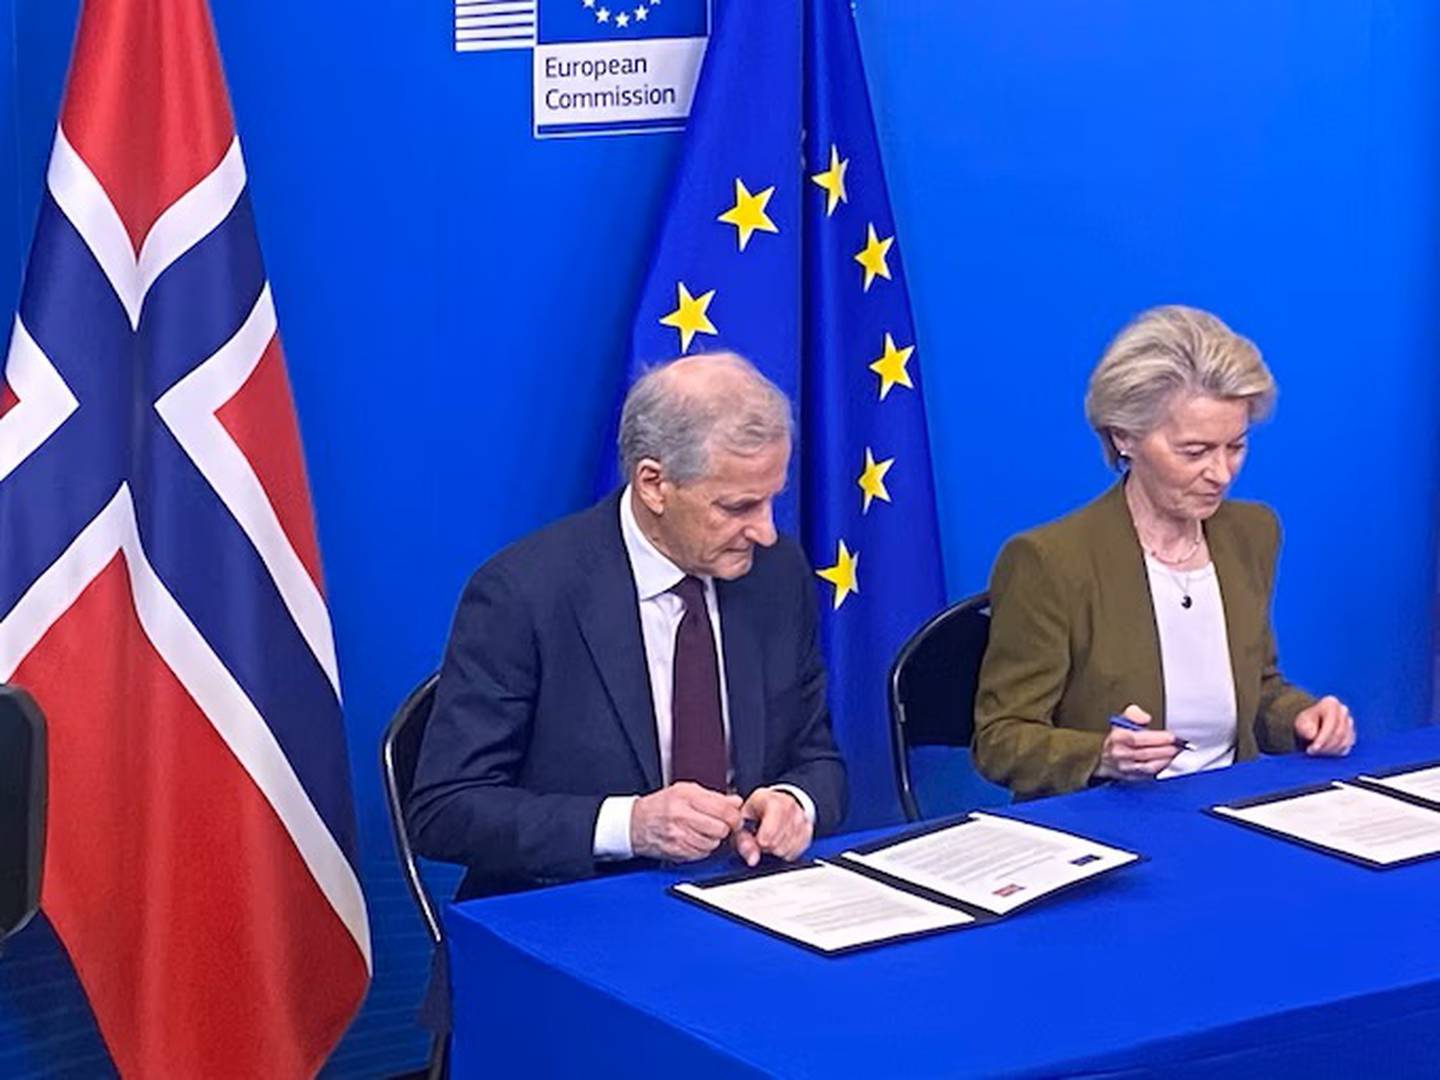 Statsminister Jonas Gahr Støre og EU-kommisjonens president Ursula von der Leyen signerte den grønne alliansen mellom Norge og EU.